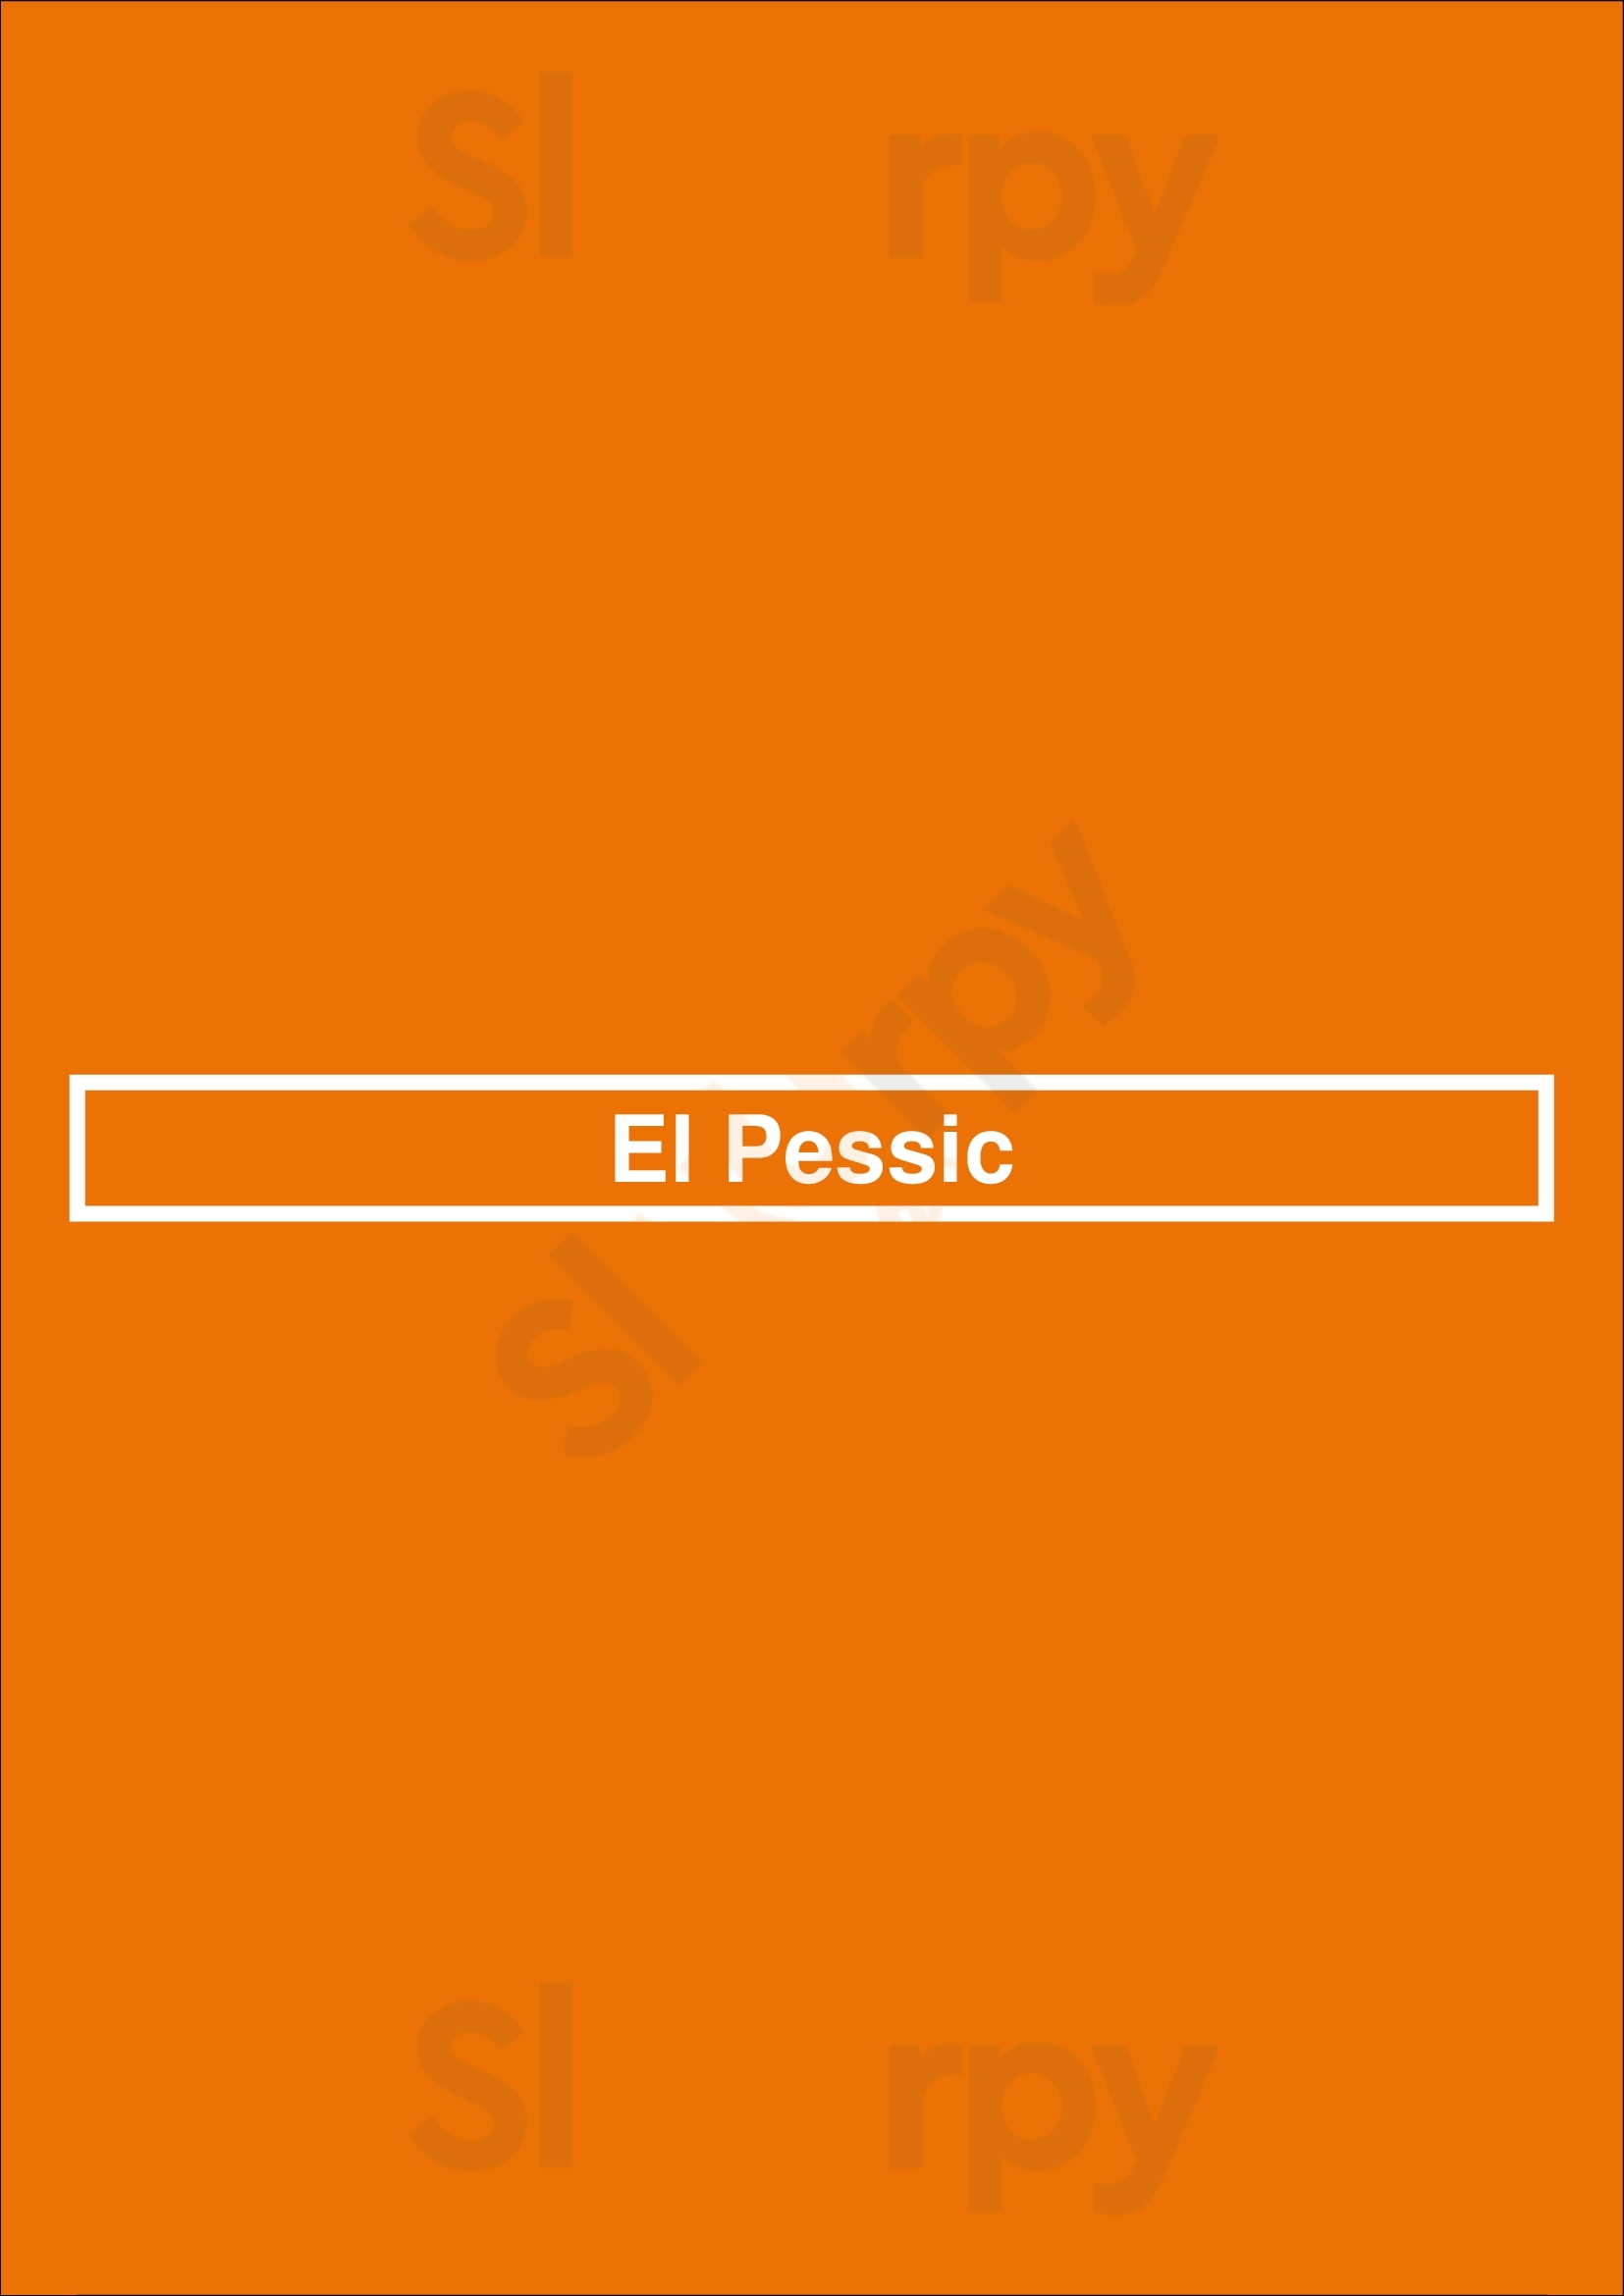 El Pessic Valencia Menu - 1